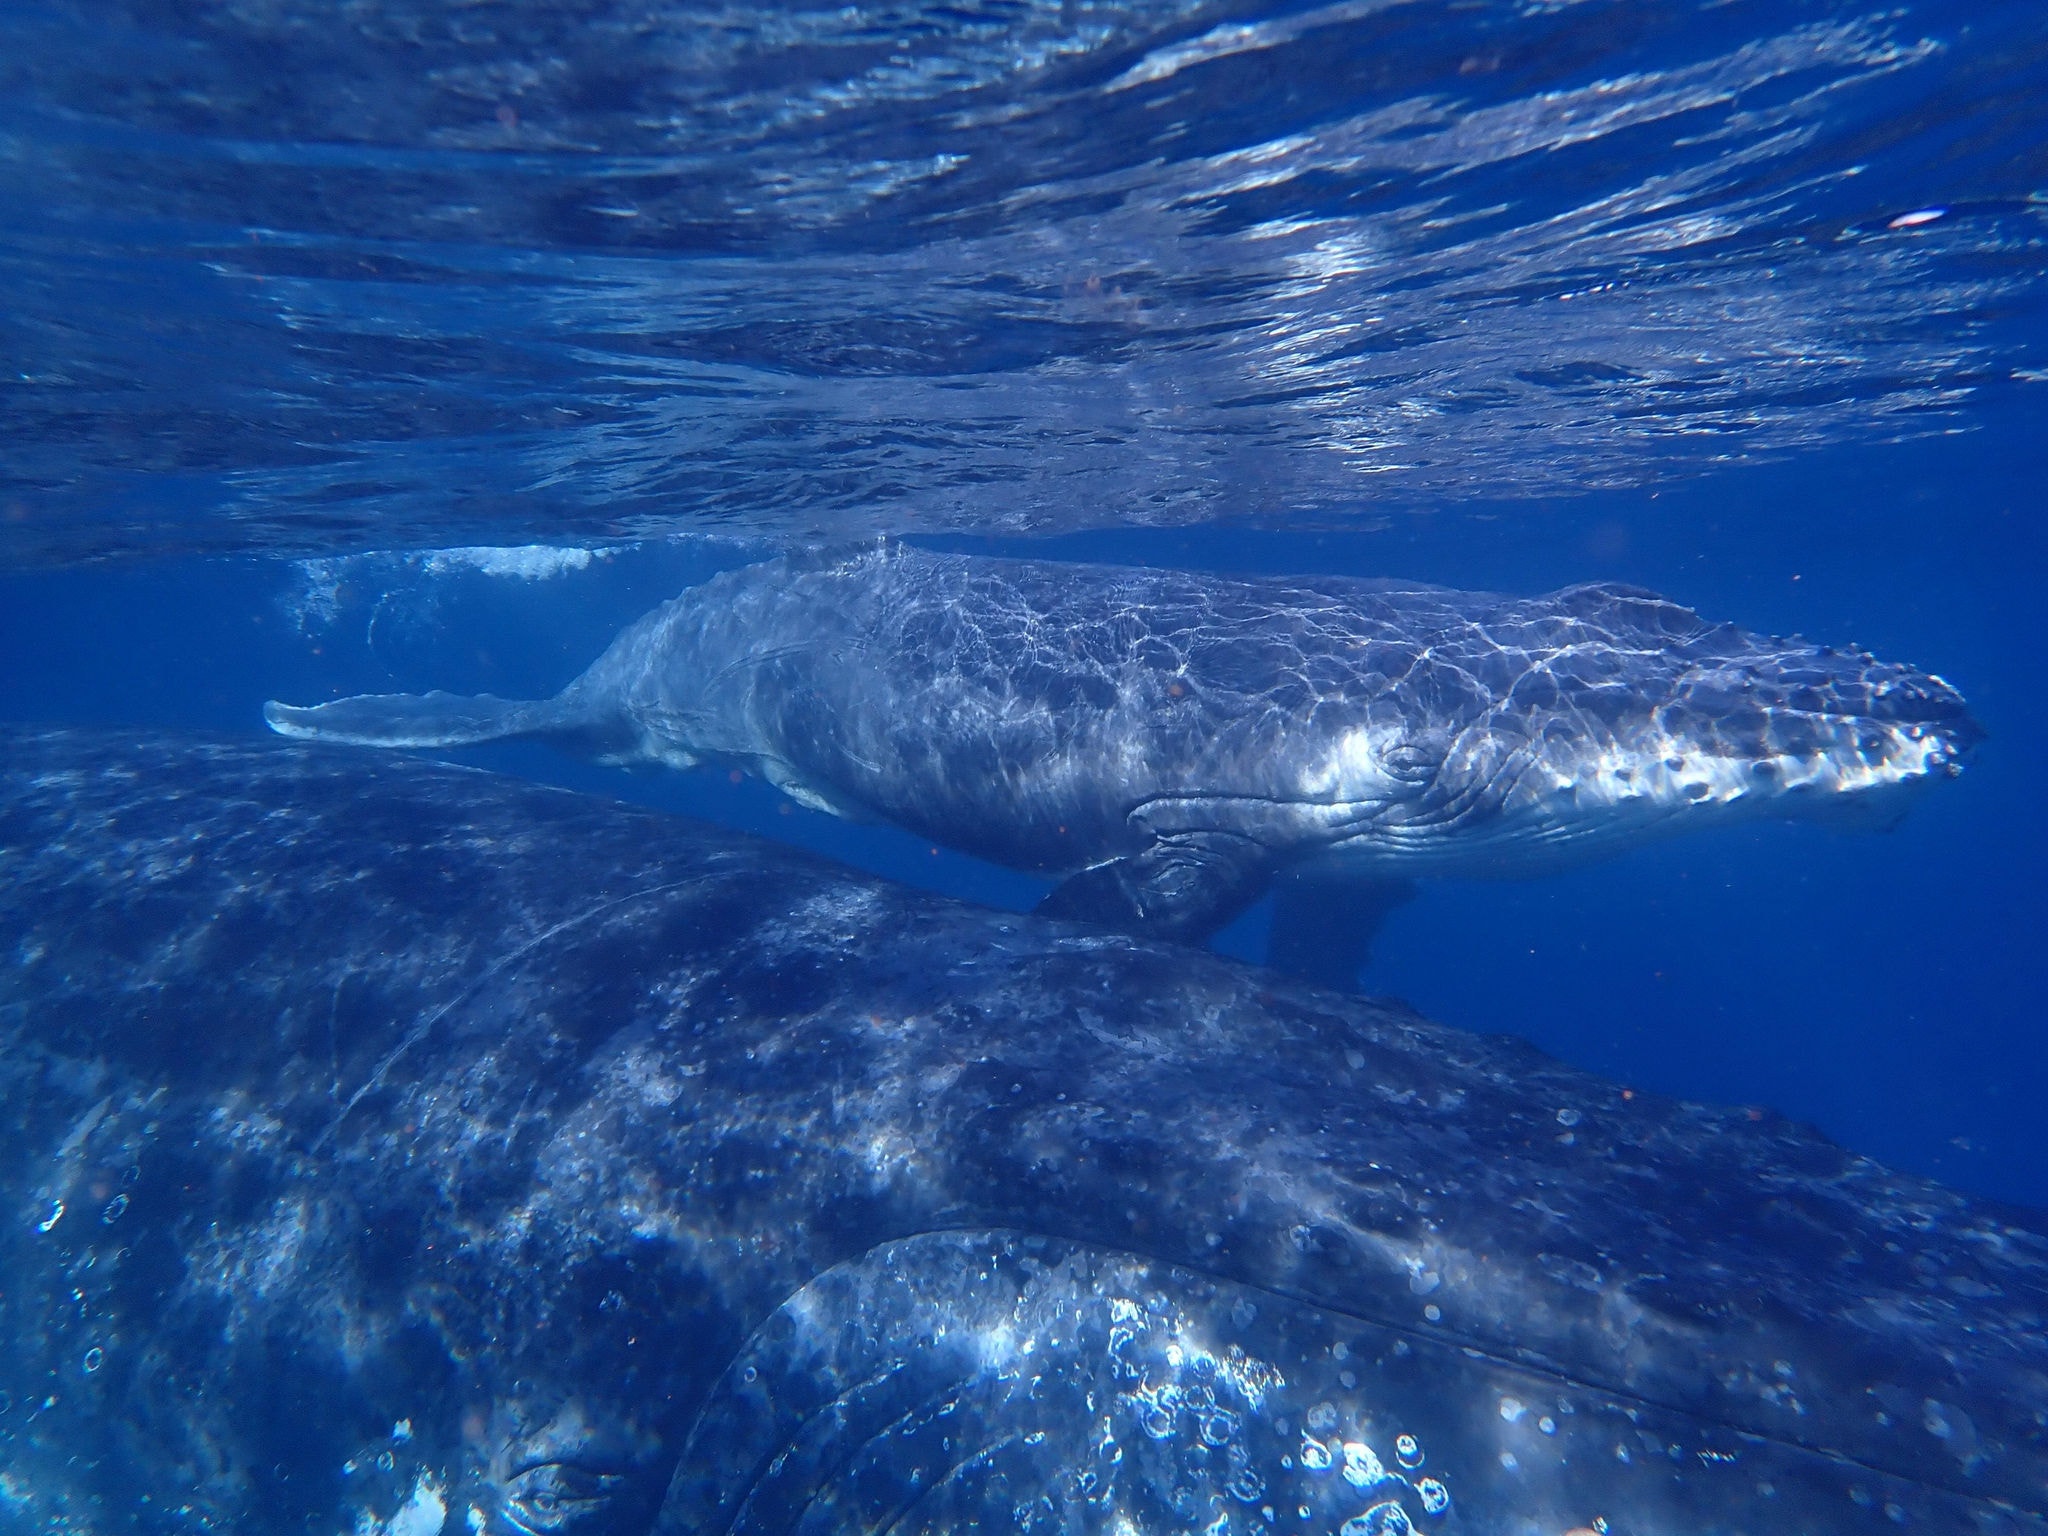 A Jubarte pode medir até 16 metros de comprimento, pesando cerca de 40 toneladas. O salto fora d´água, um dos mais belos espetáculos do mar, é o momento mais aguardado por turistas no whale watching 